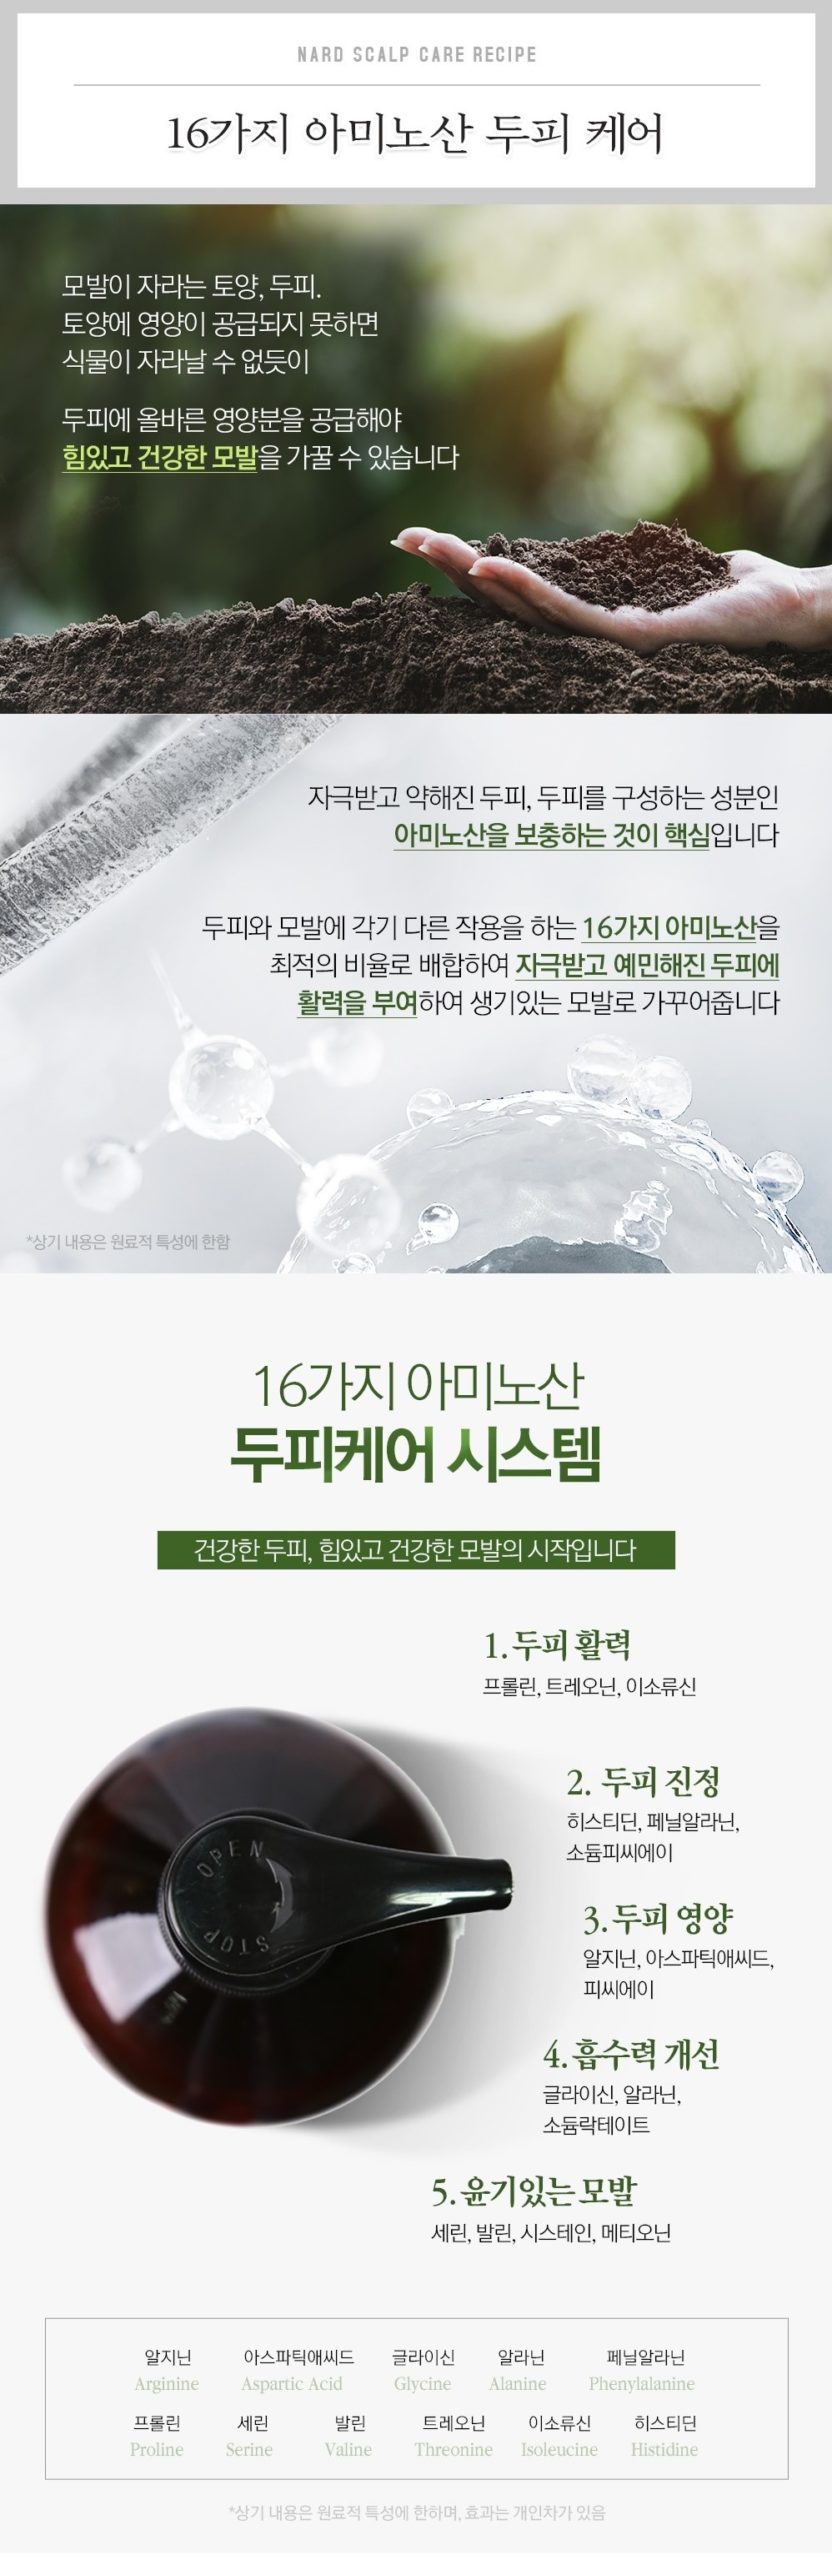 韓國食品-[Nard] Scalp Deep Cleansing Shampoo 1000ml